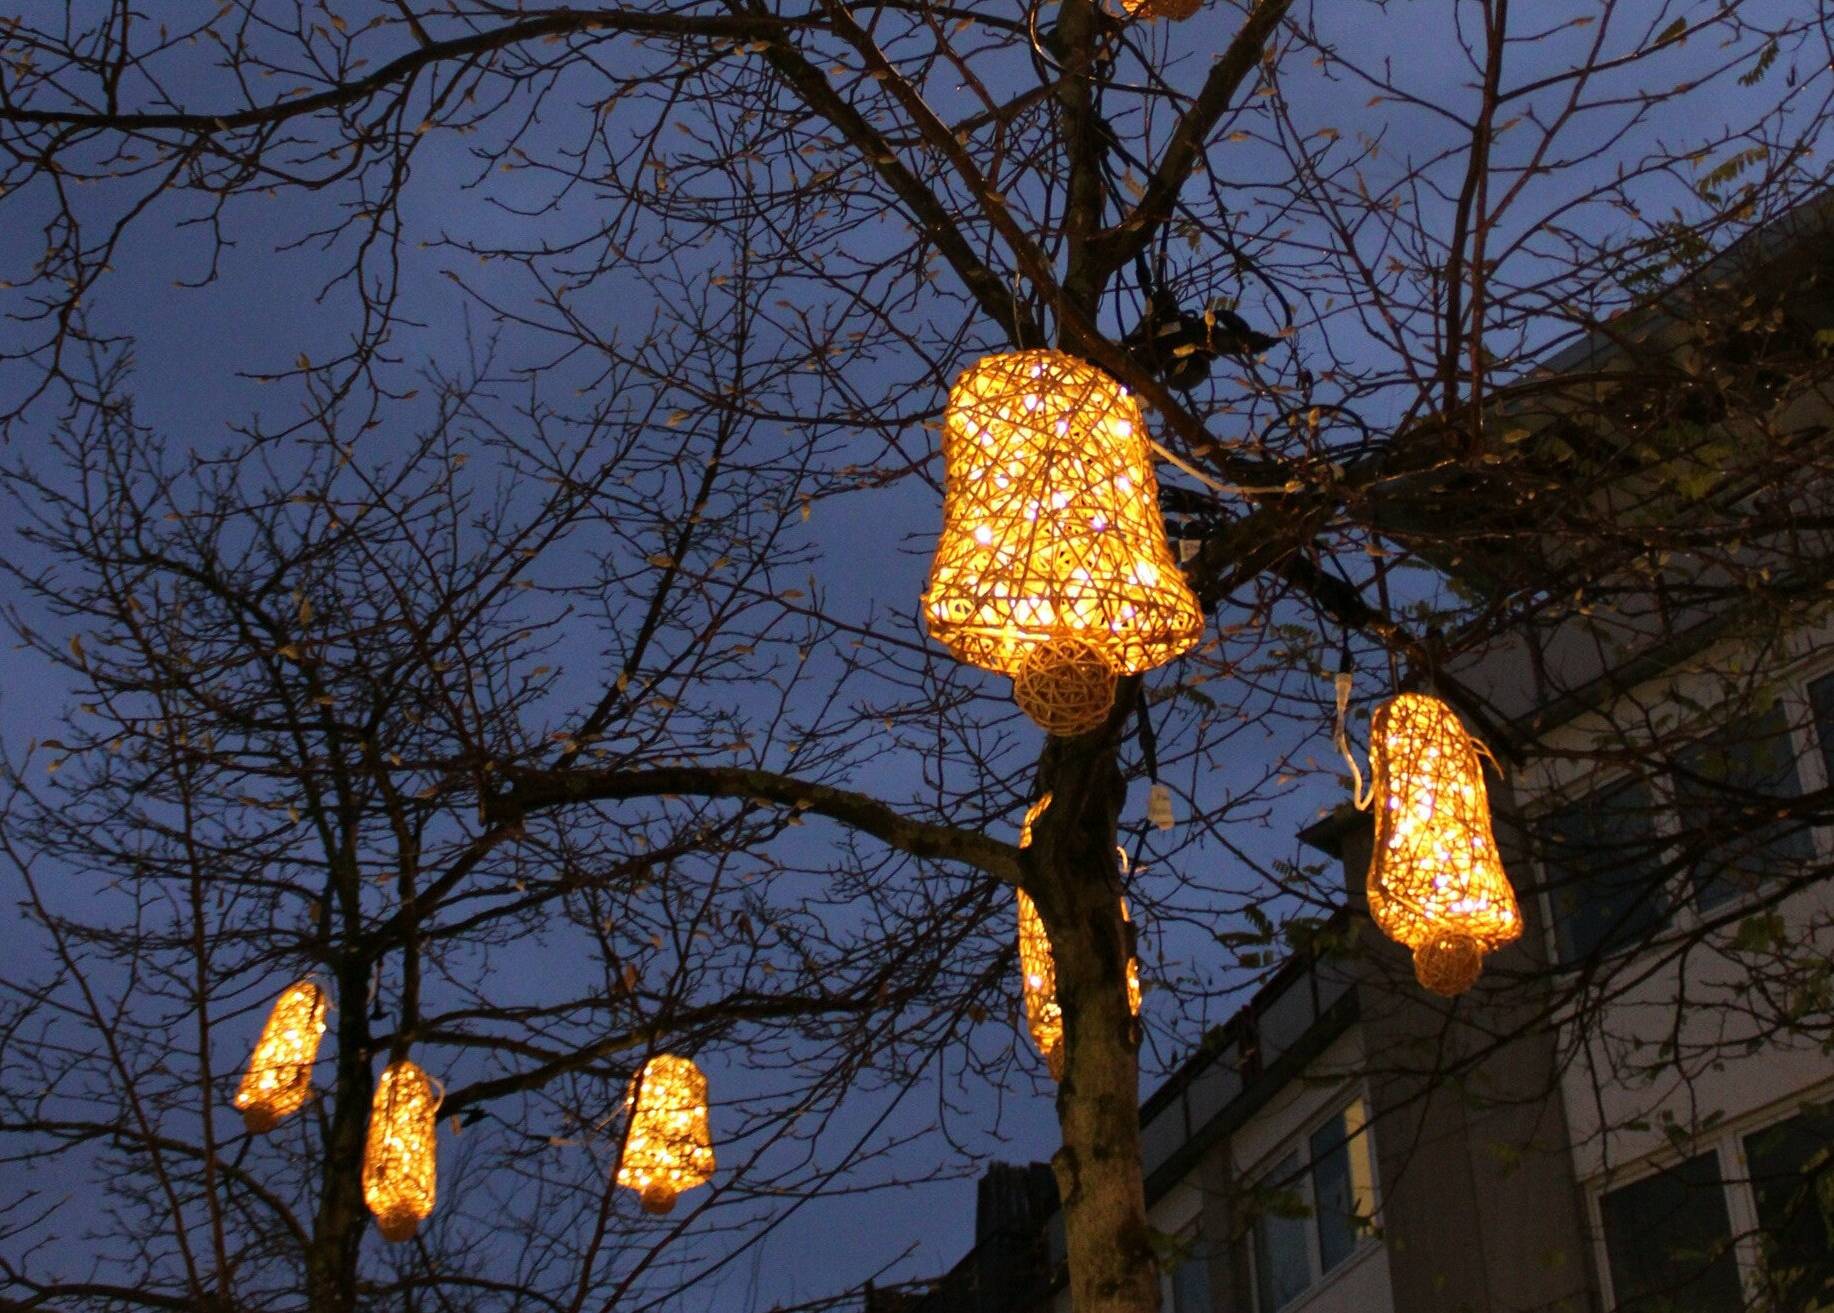   Neben der Weihnachtsbeleuchtung sorgen wieder schön geschmückte Tannenbäume für festliche Atmosphäre in der City. 